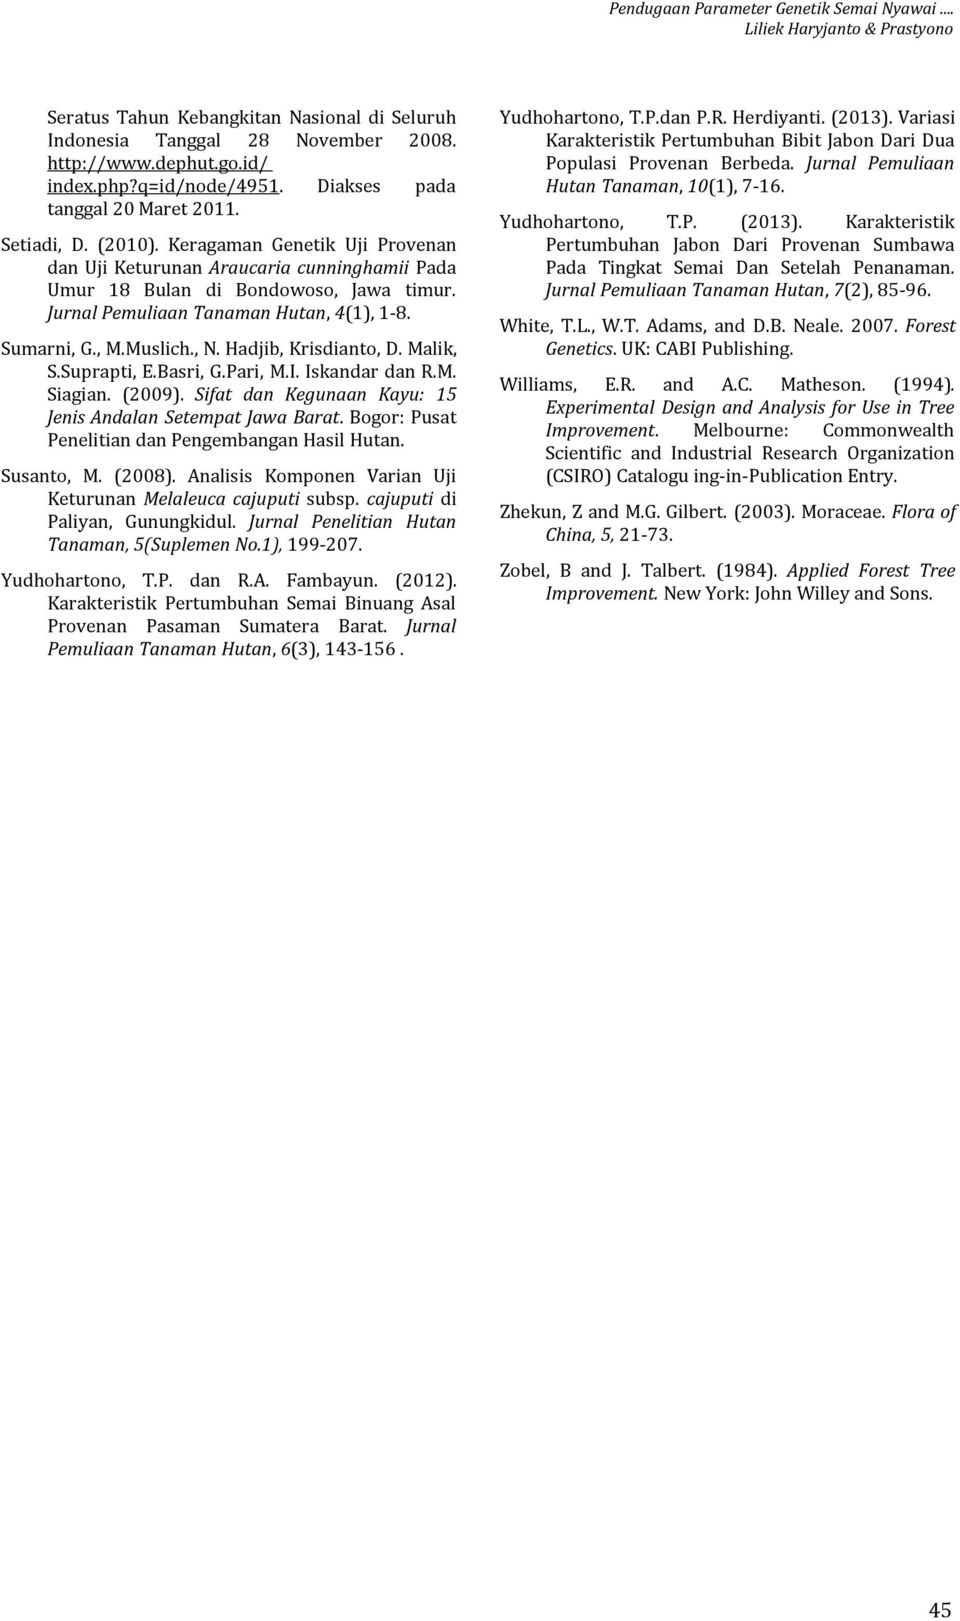 Jurnal Pemuliaan Tanaman Hutan, 4(1), 1-8. Sumarni, G., M.Muslich., N. Hadjib, Krisdianto, D. Malik, S.Suprapti, E.Basri, G.Pari, M.I. Iskandar dan R.M. Siagian. (2009).